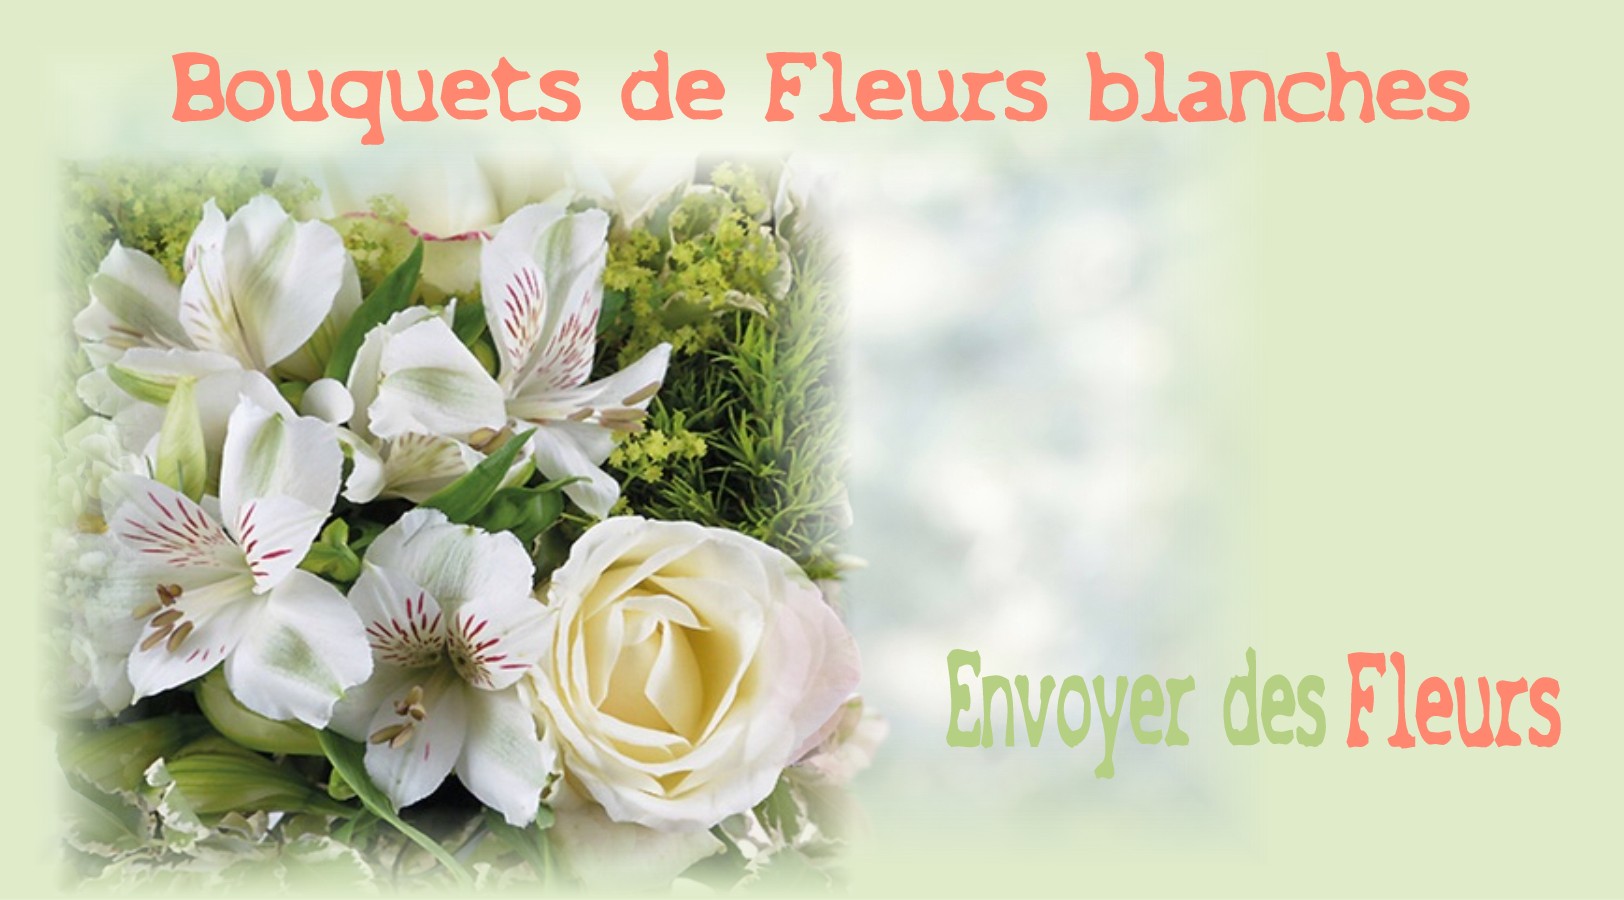 BOUQUETS DE FLEURS BLANCHES -FLEURISTE de l'AIN - ENVOYER DES FLEURS